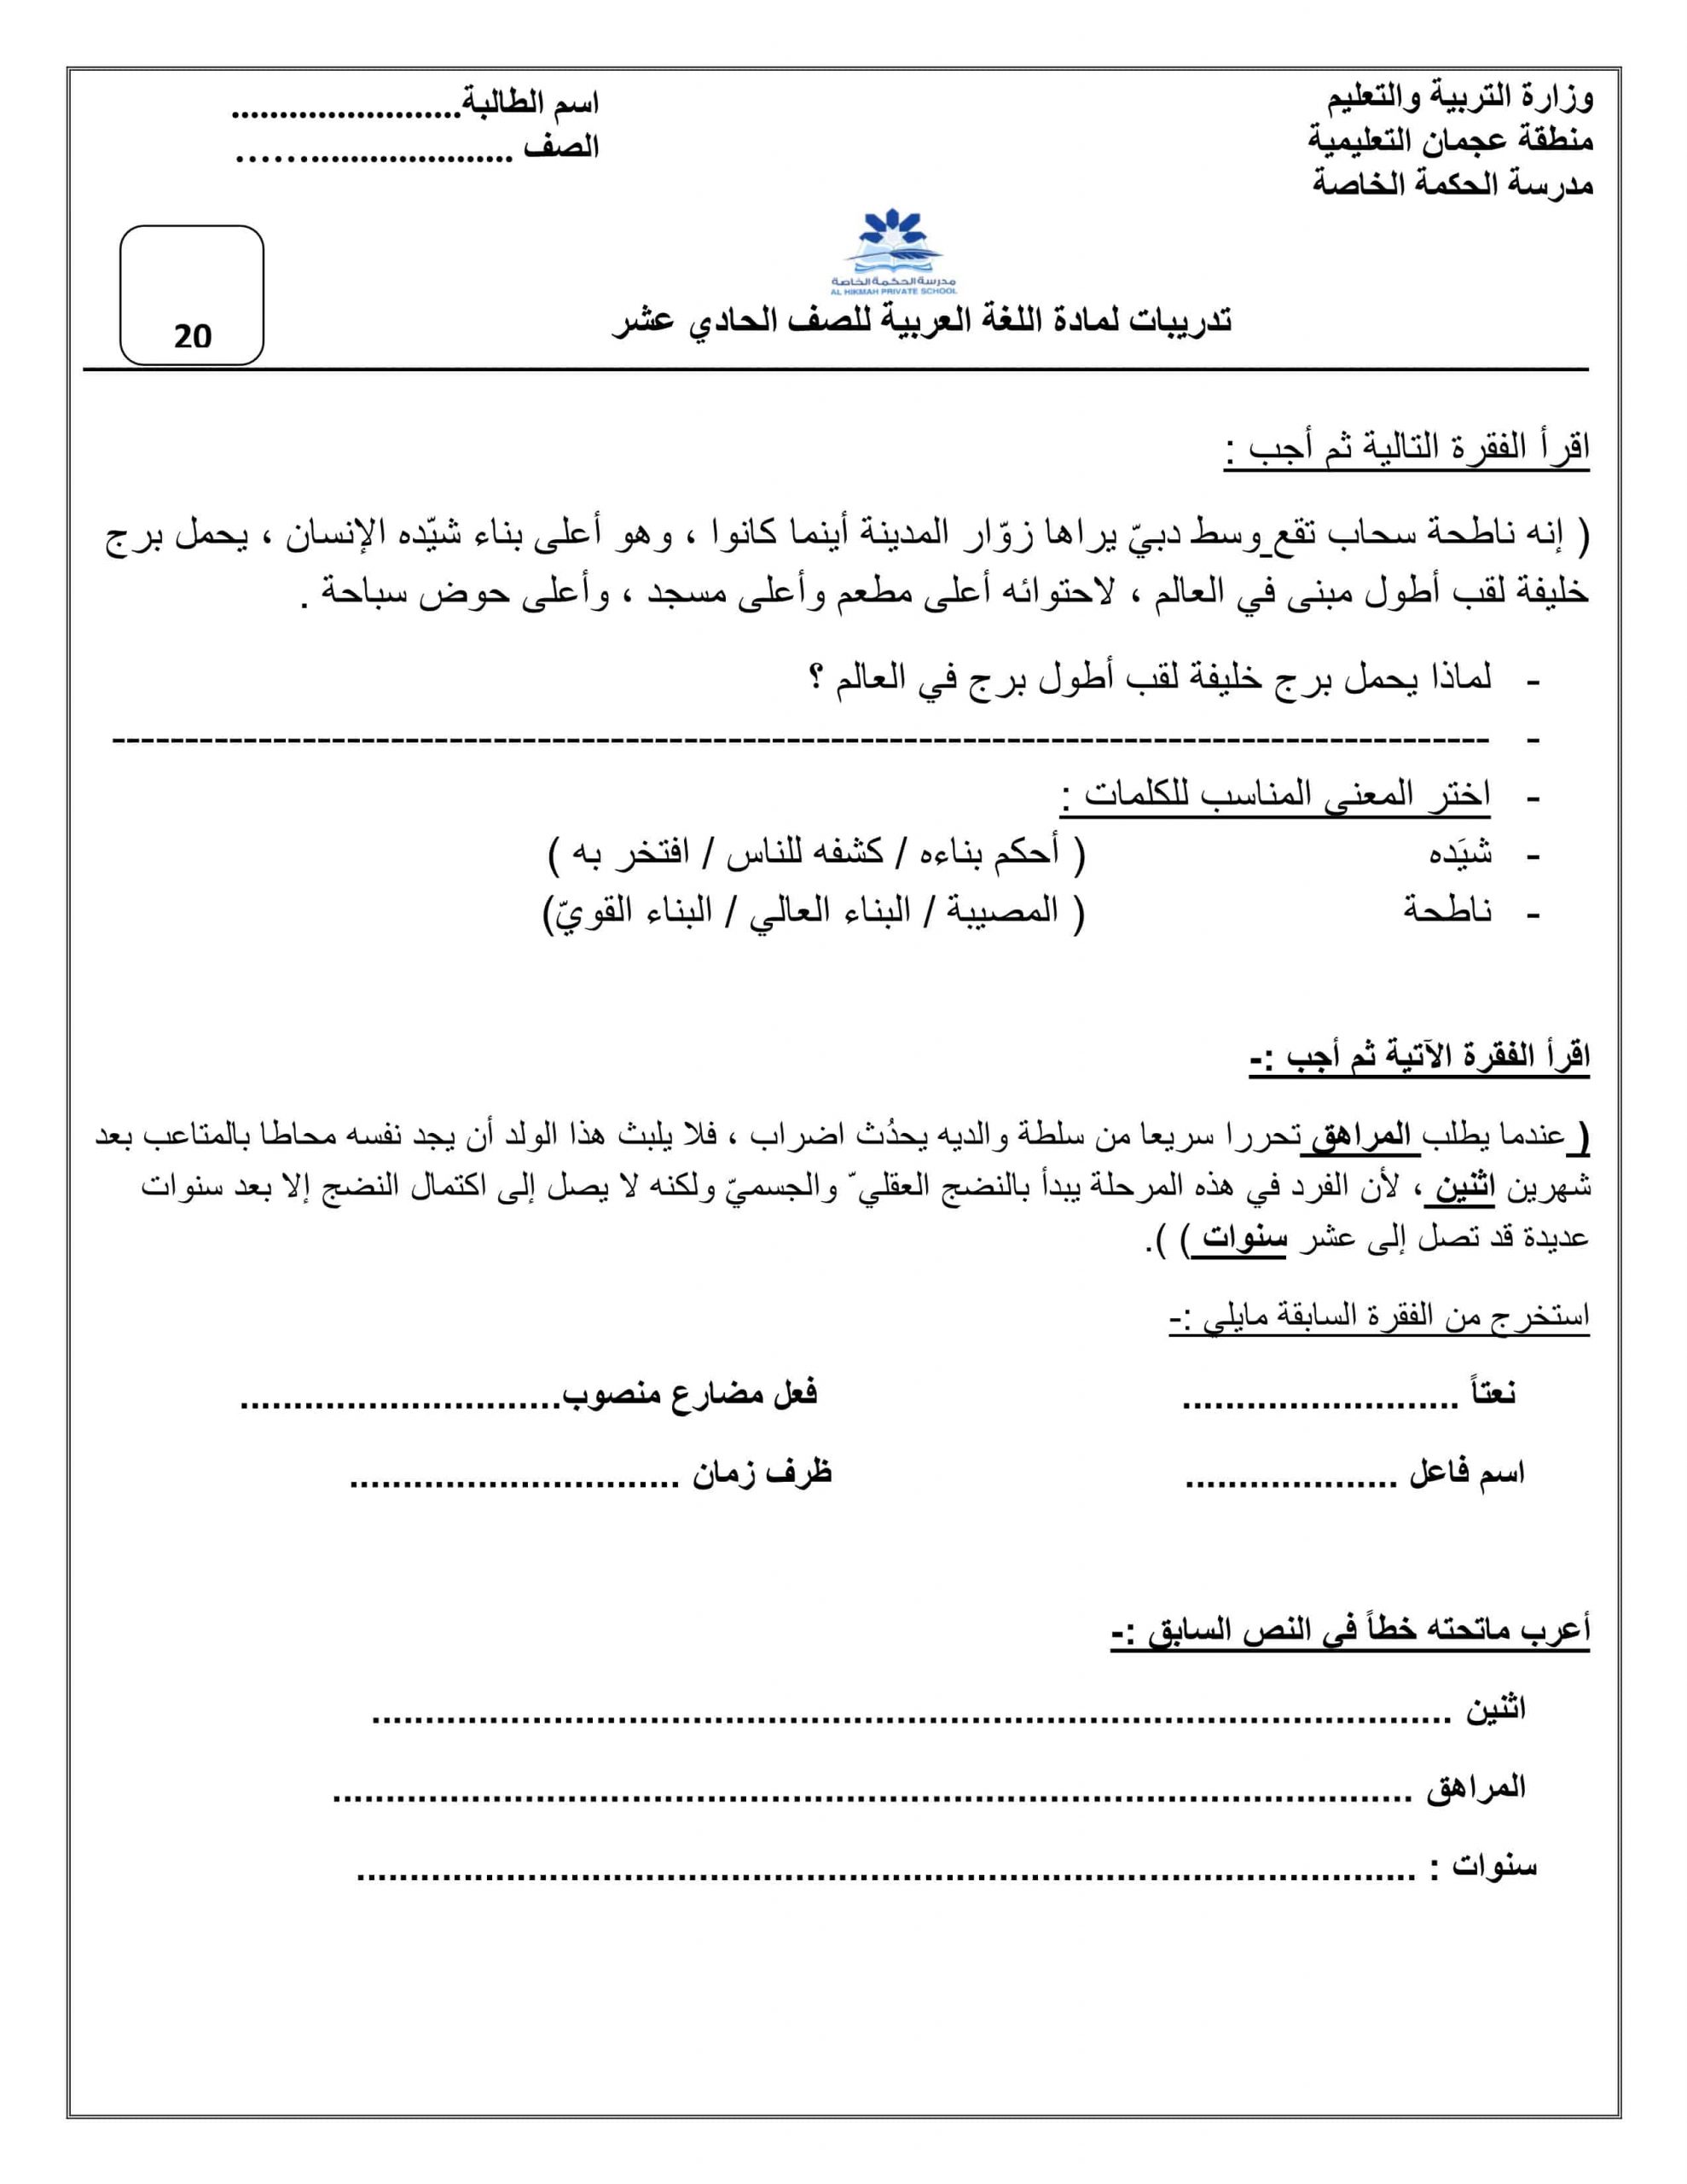 أوراق عمل تدريبات متنوعة الفصل الدراسي الثالث مادة اللغة العربية 